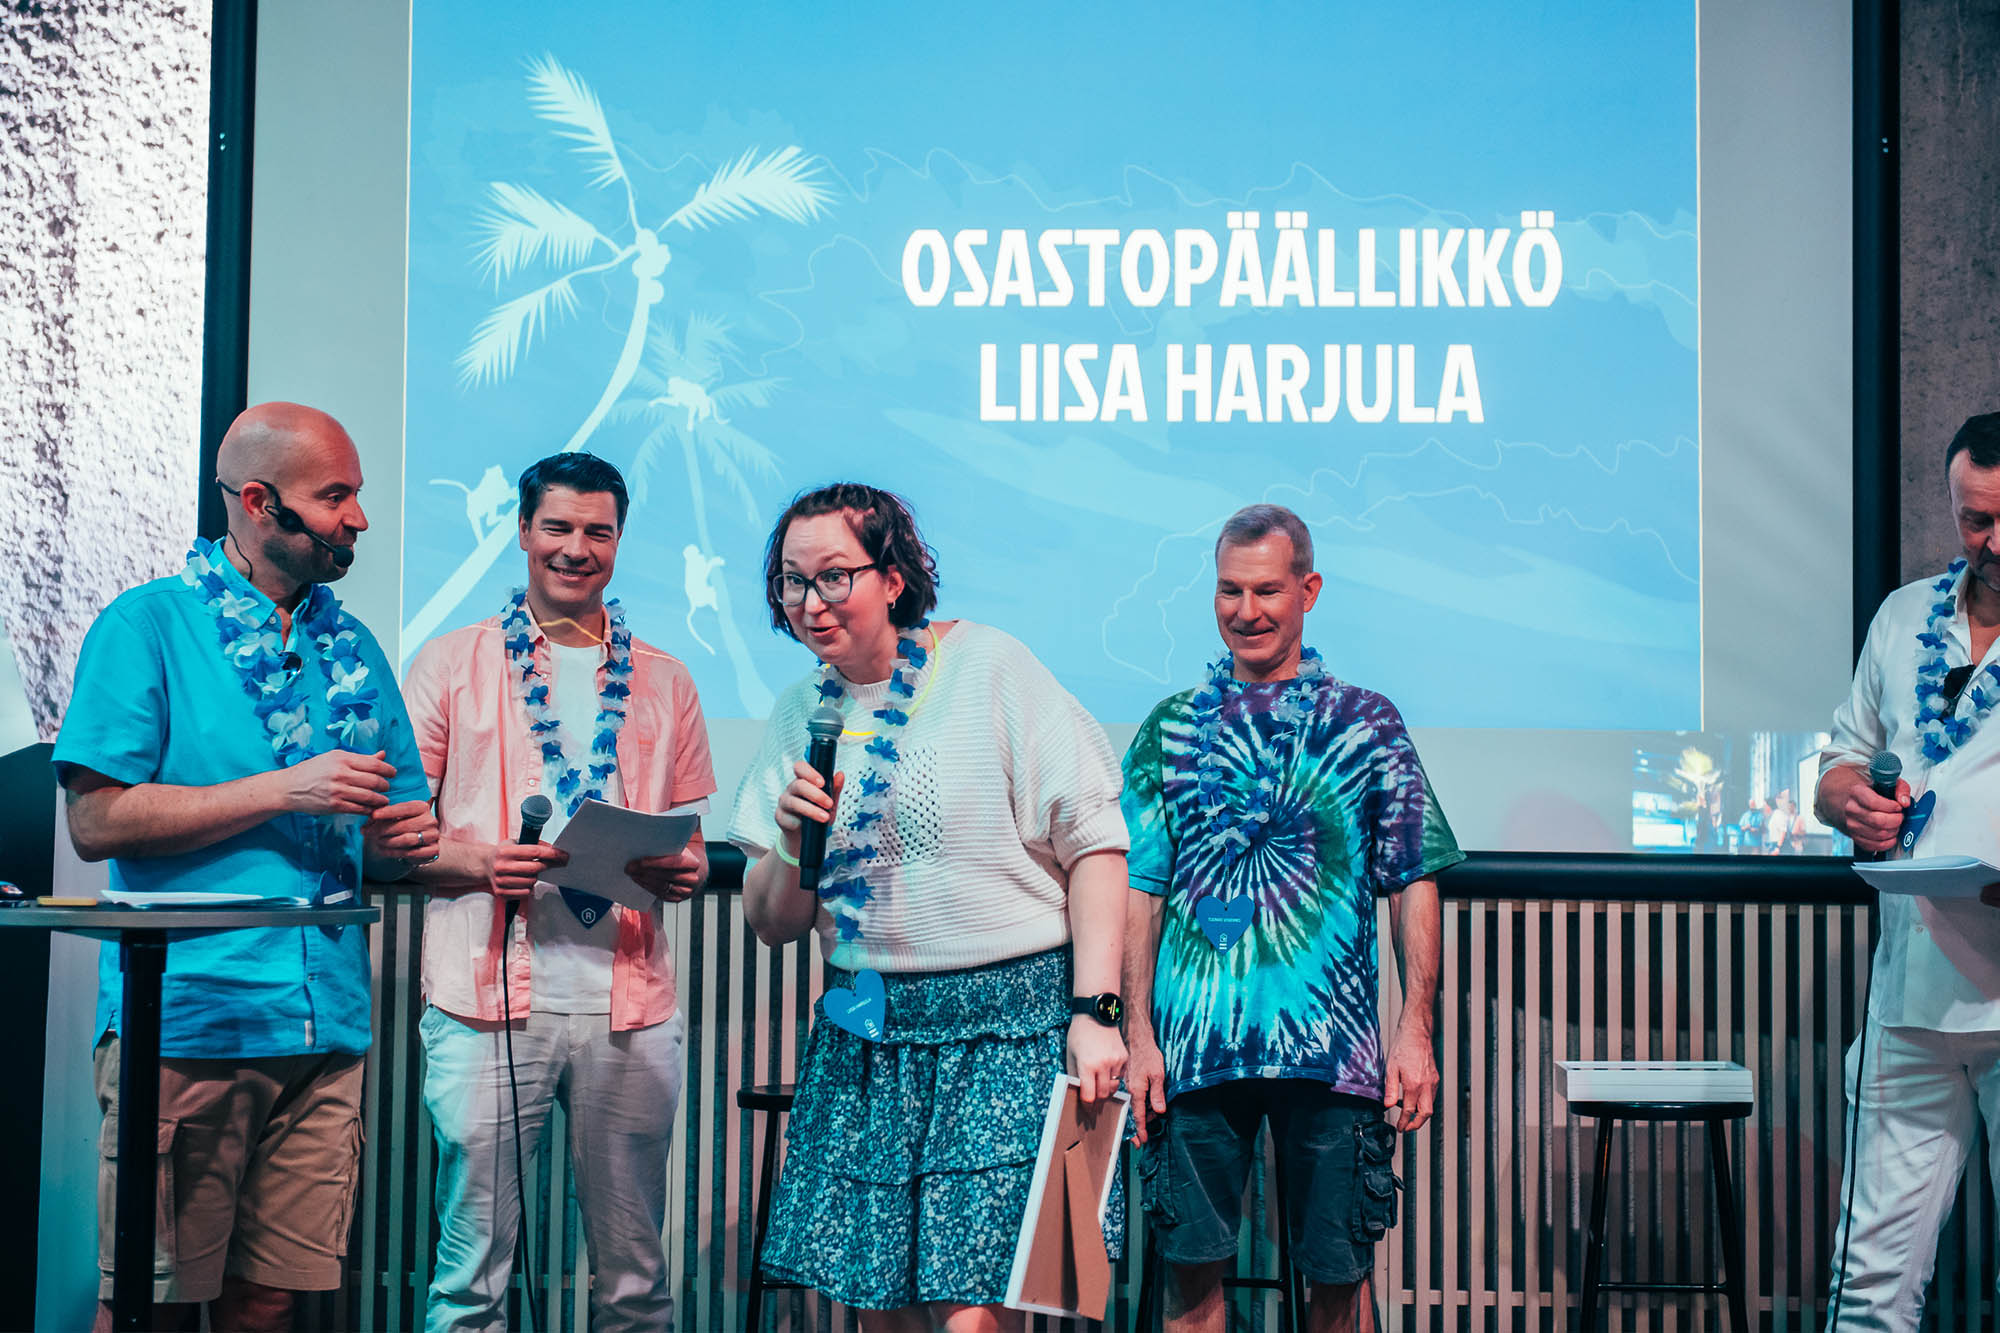 Liisa Harjula on Raksystemsin vuoden 2022 osastopäällikkö.